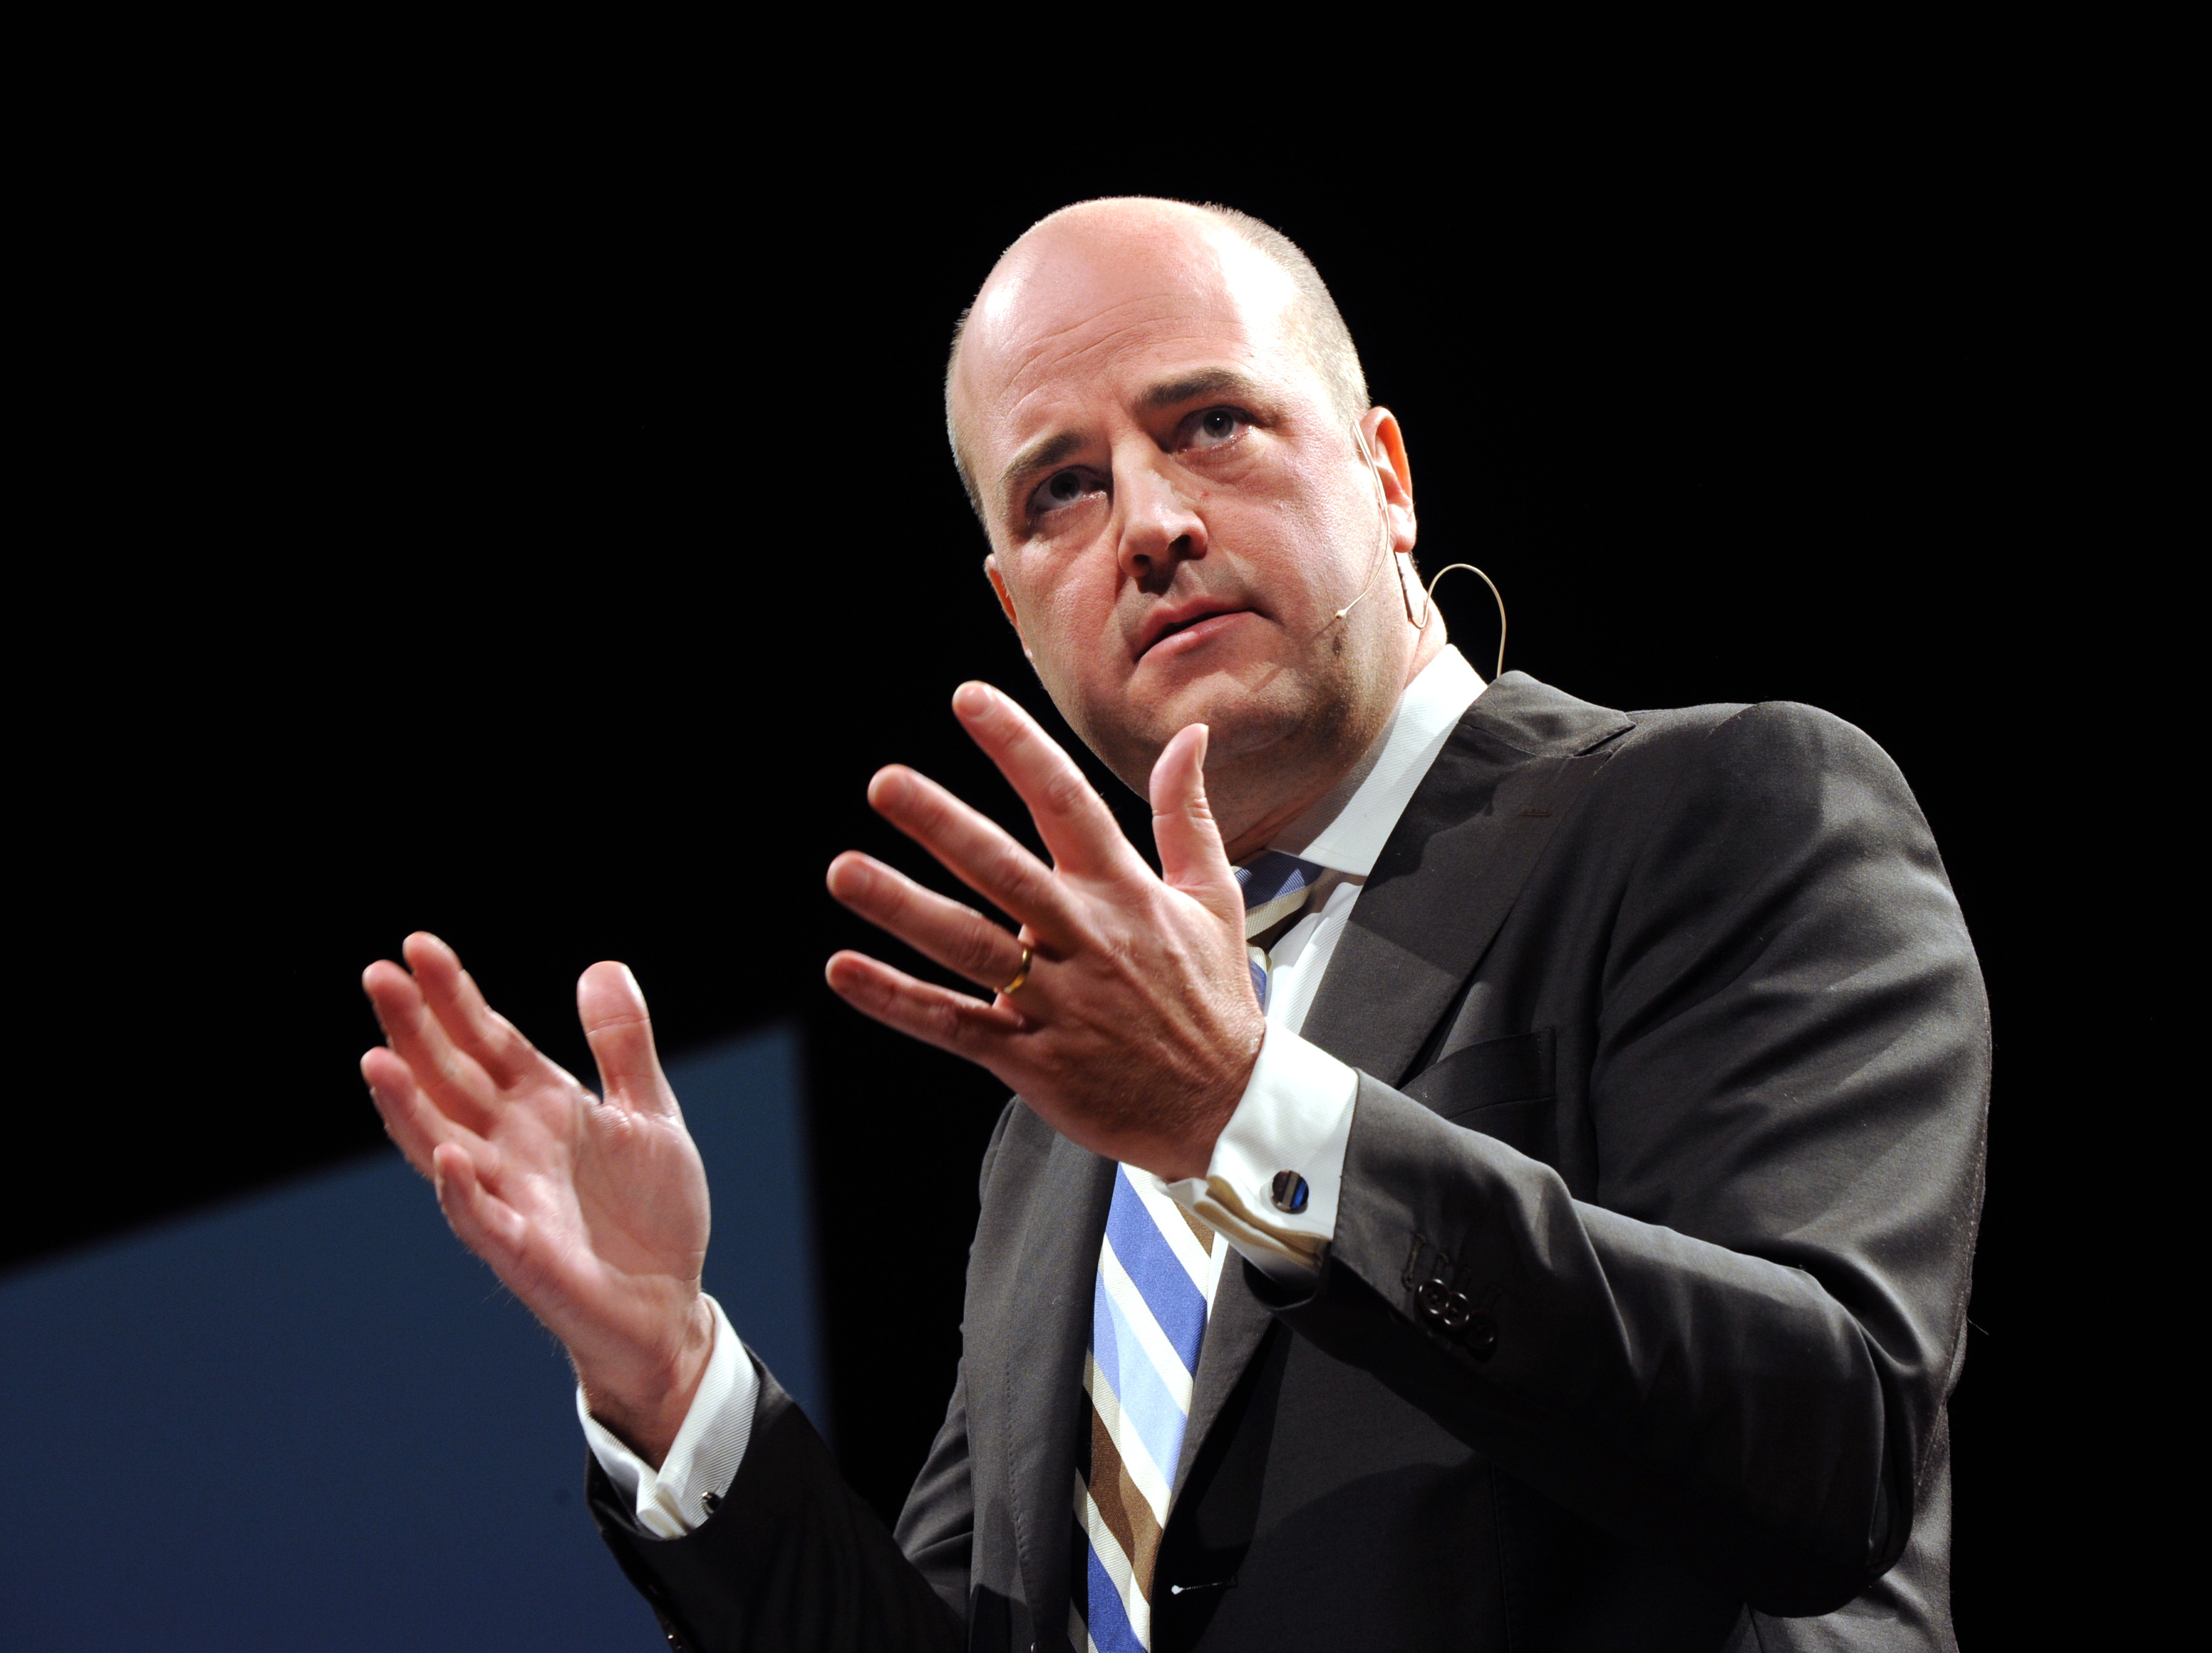 Reinfeldt talade under Moderatstämman i Örebro.